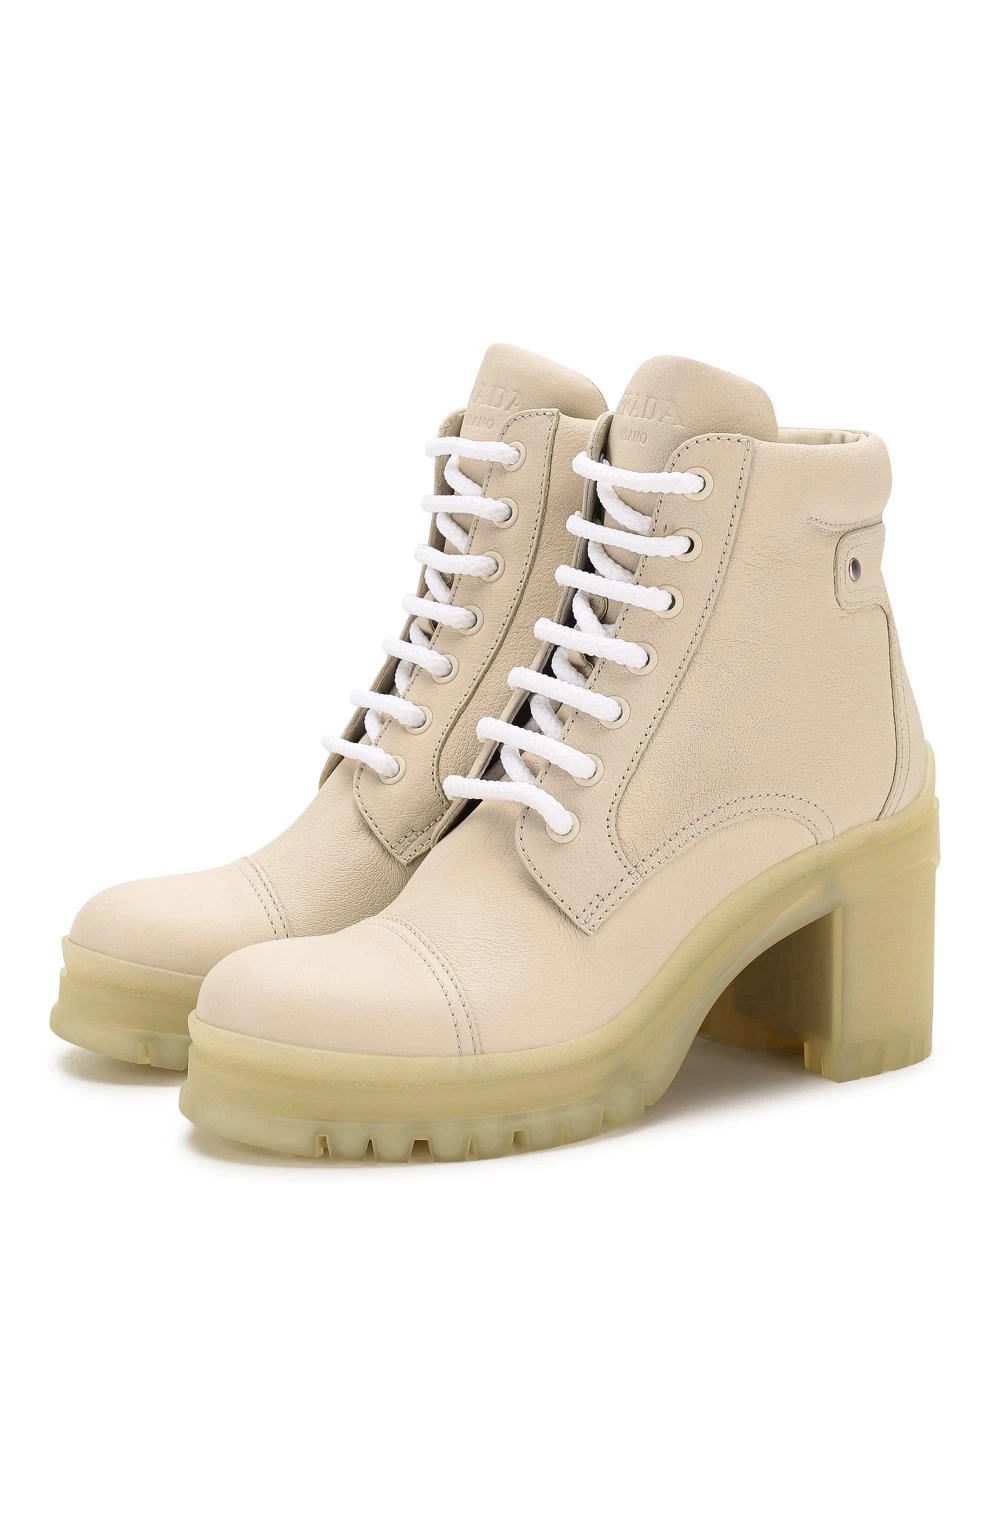 推荐PRADA 女色乳白色皮革高跟靴子 1T584L-007-F0K74商品